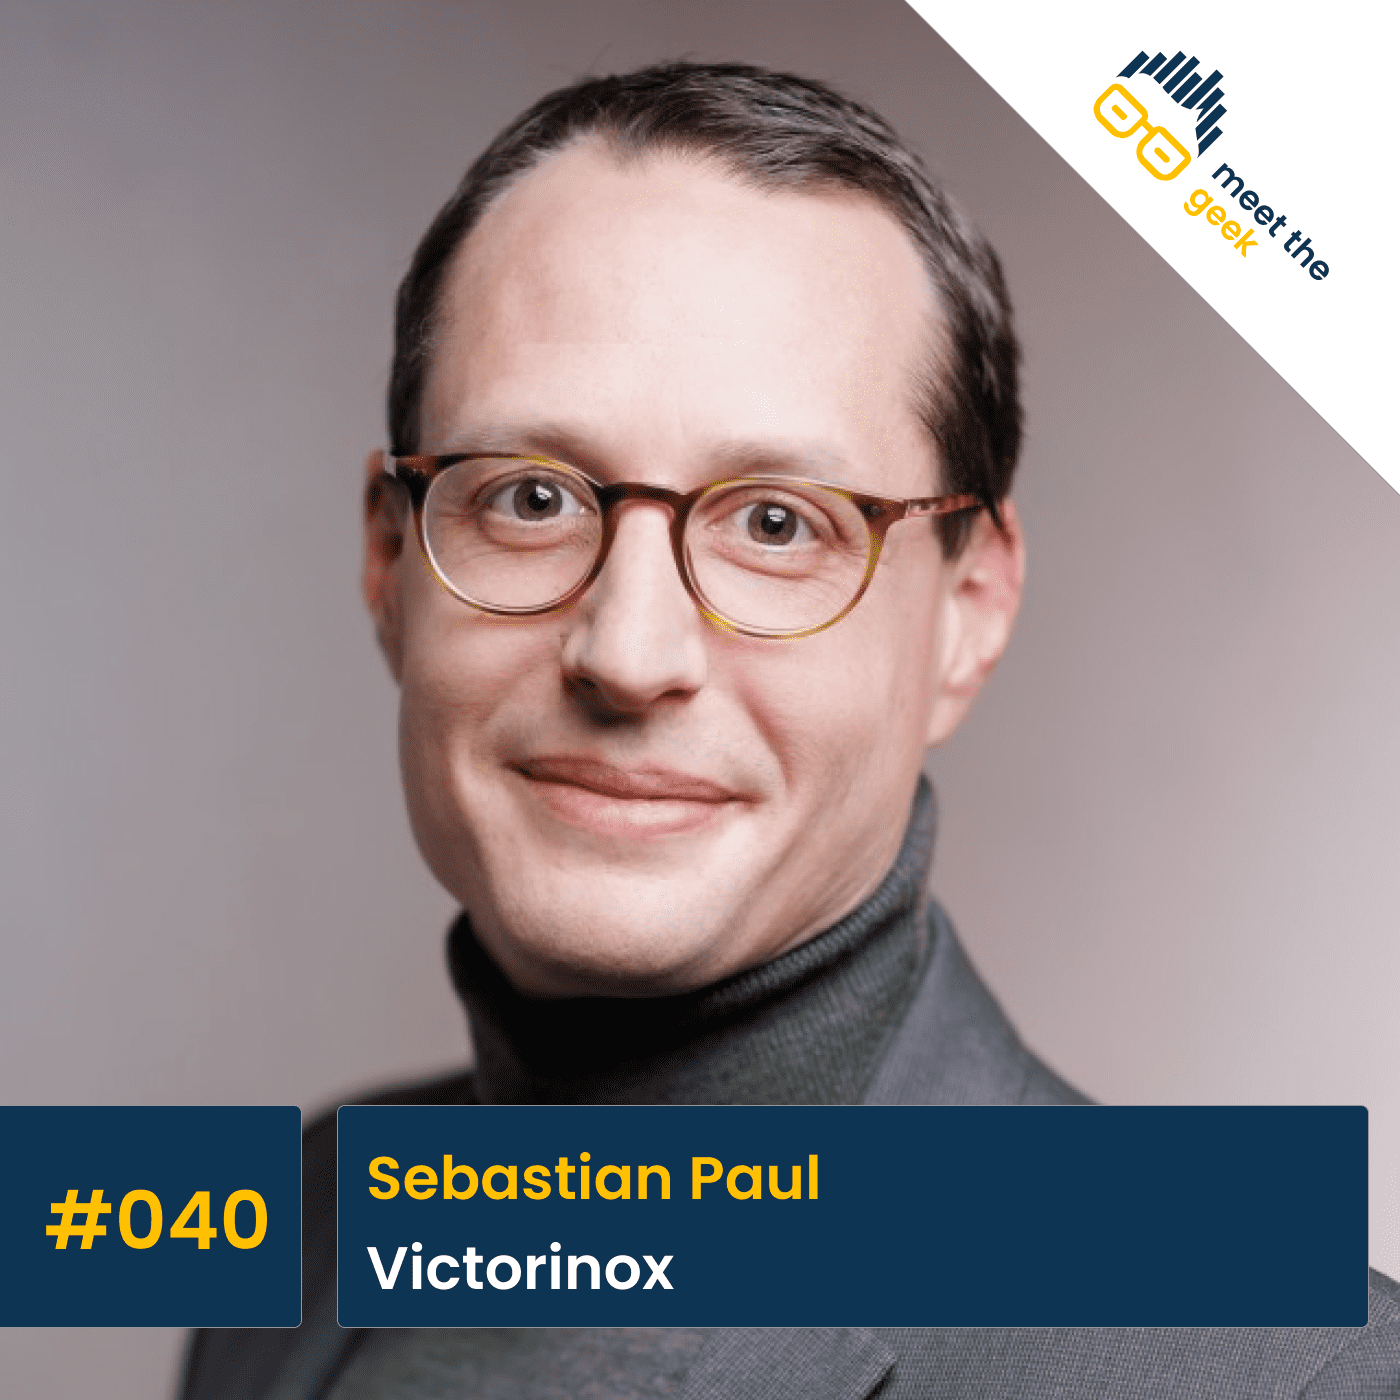 #040 Sebastian Paul, Victorinox